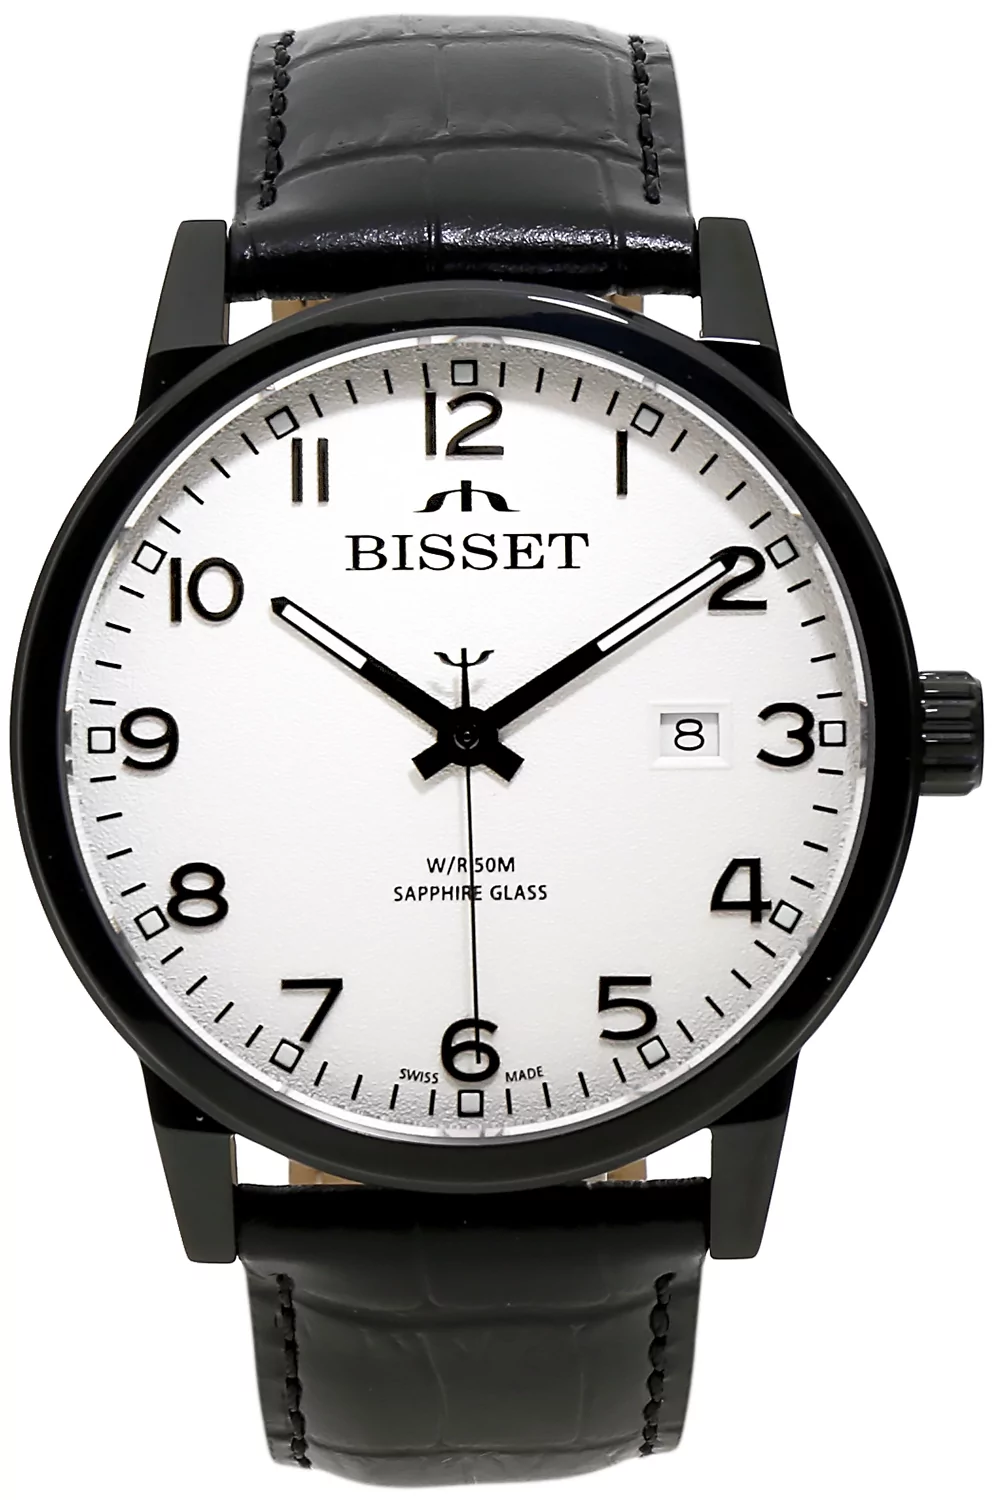 Zegarek Bisset BIS185 BSCE62 biały czarny - Natychmiastowa WYSYŁKA 0zł (DHL DPD INPOST) | Grawer 1zł | Zwrot 100 dni